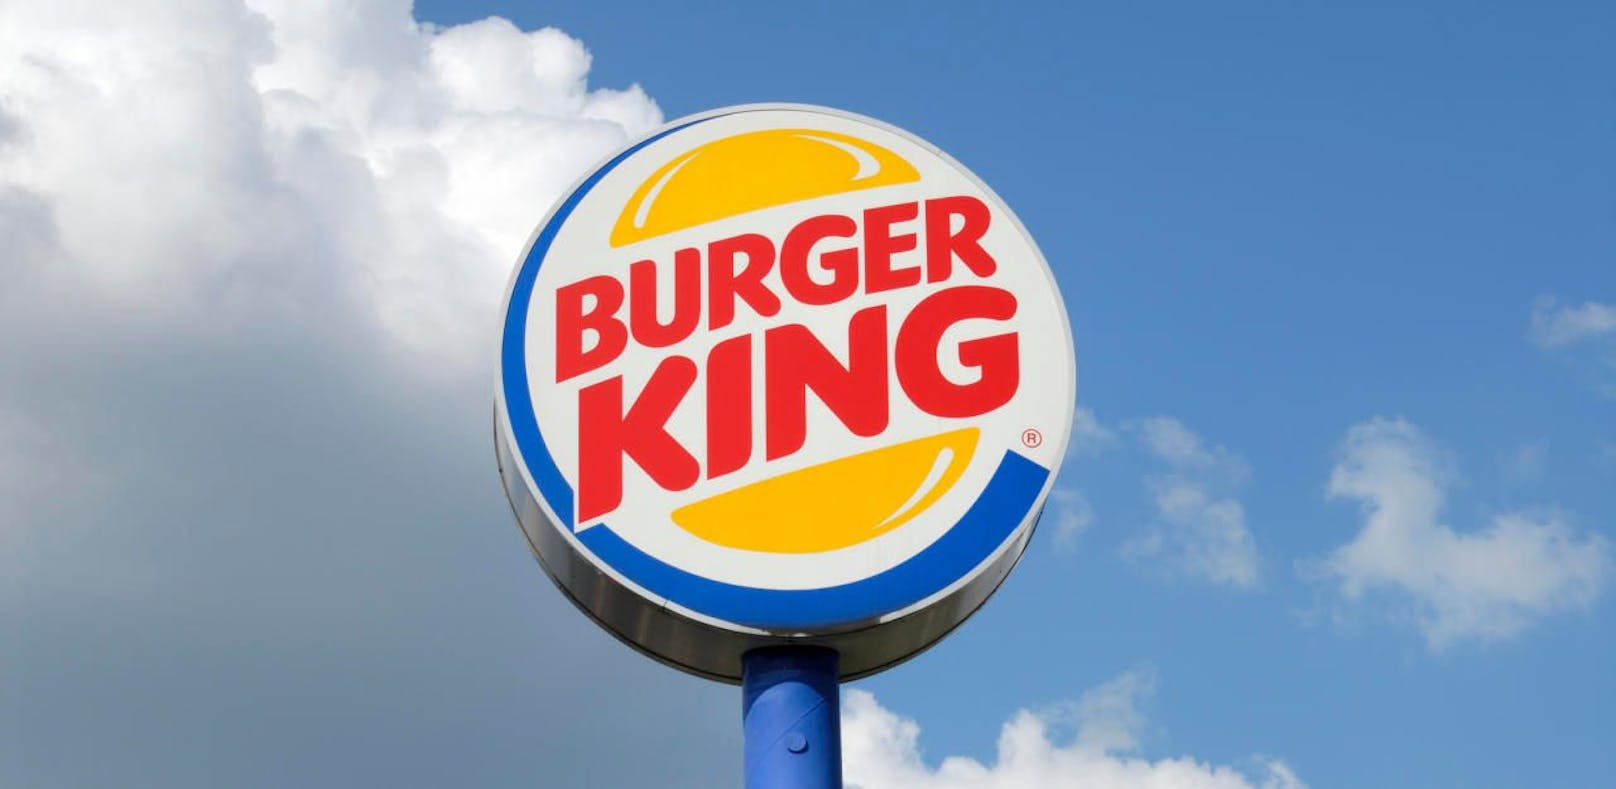 Symbolbild eines Burger King-Schilds.